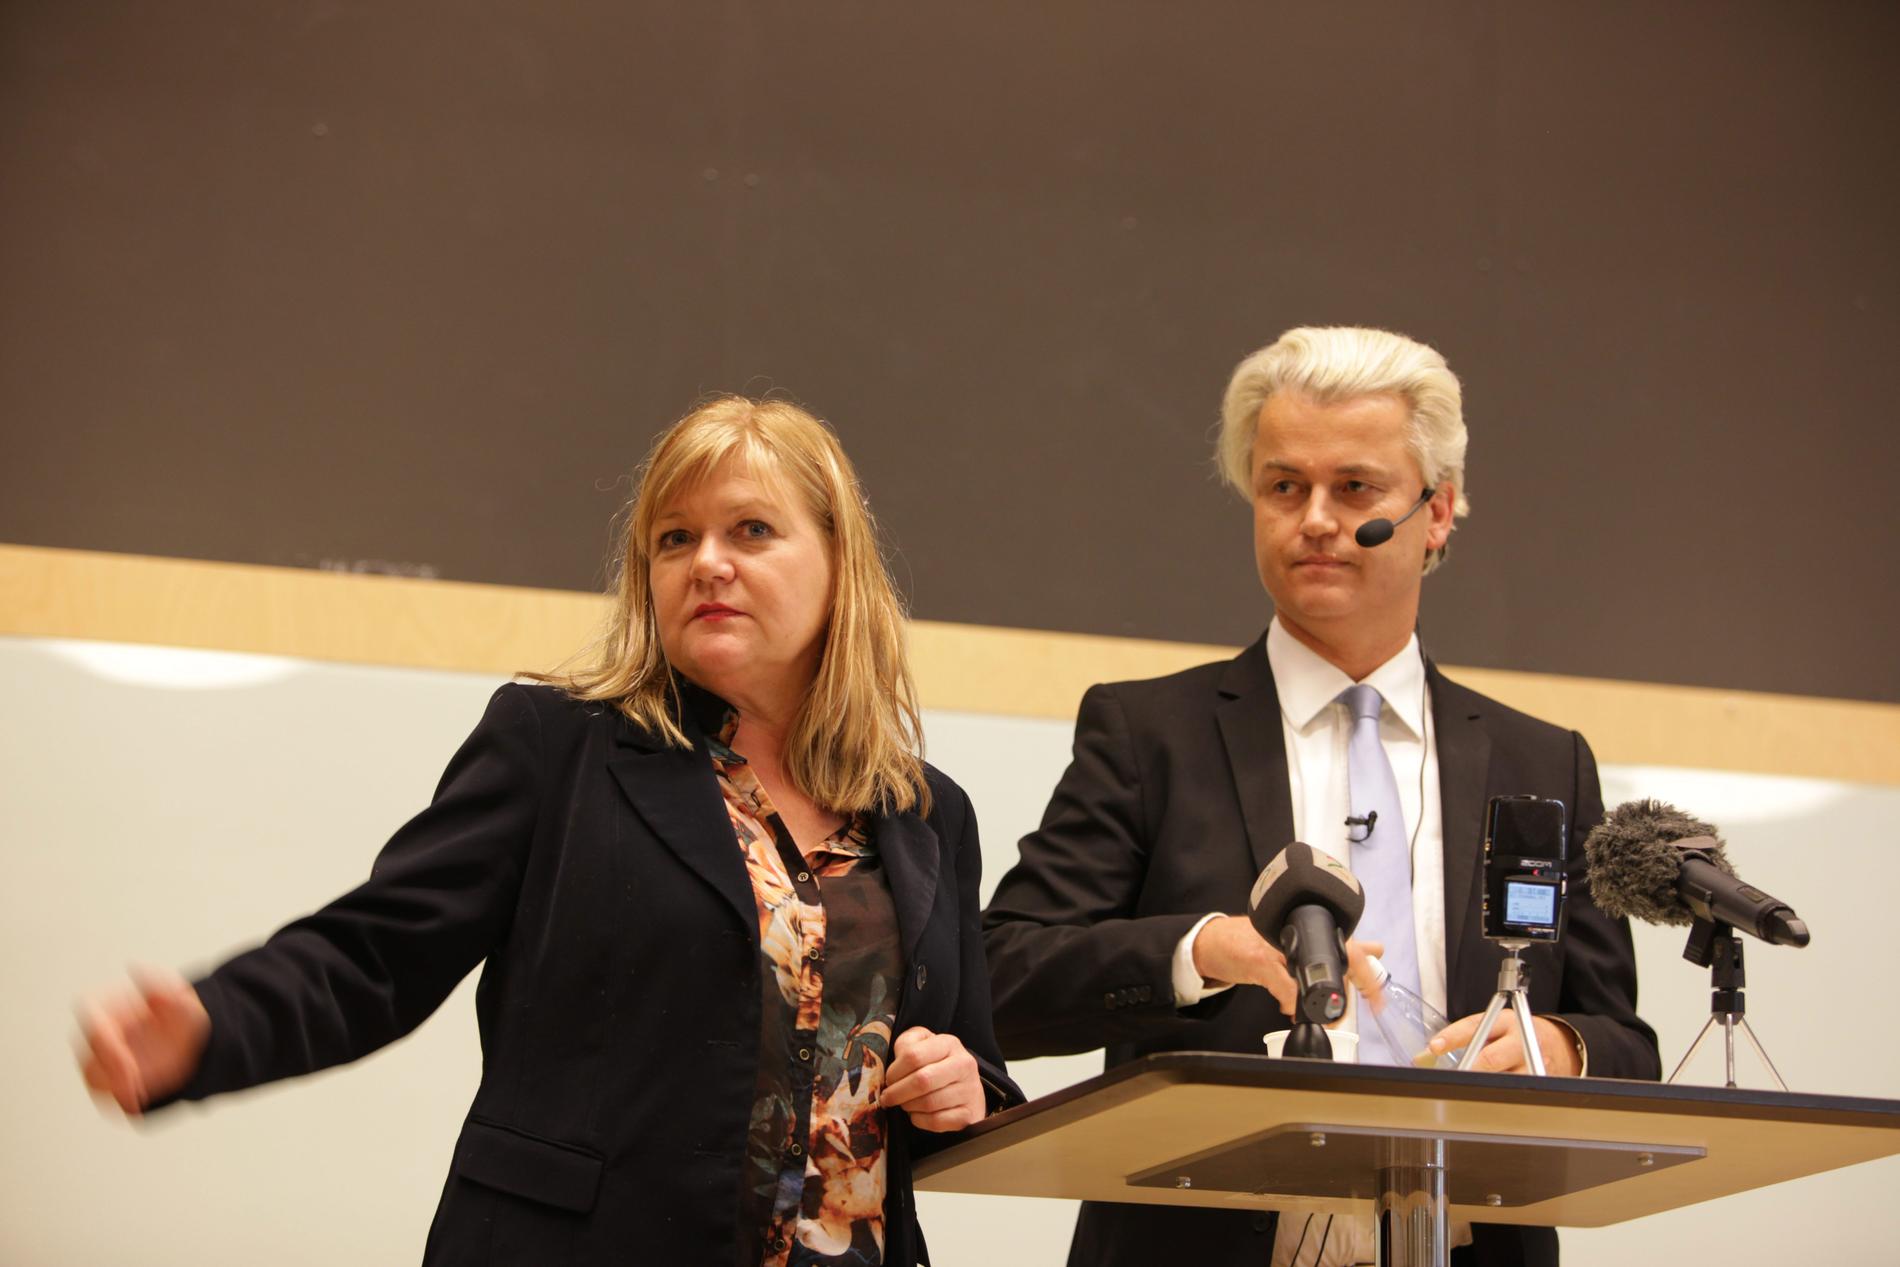 Ingrid Carlqvist har i flera år varit en central person inom svensk extremhöger. Här på ett arkivfoto tillsammans med Geert Wilders, islamfientlig politiker i Nederländerna. 